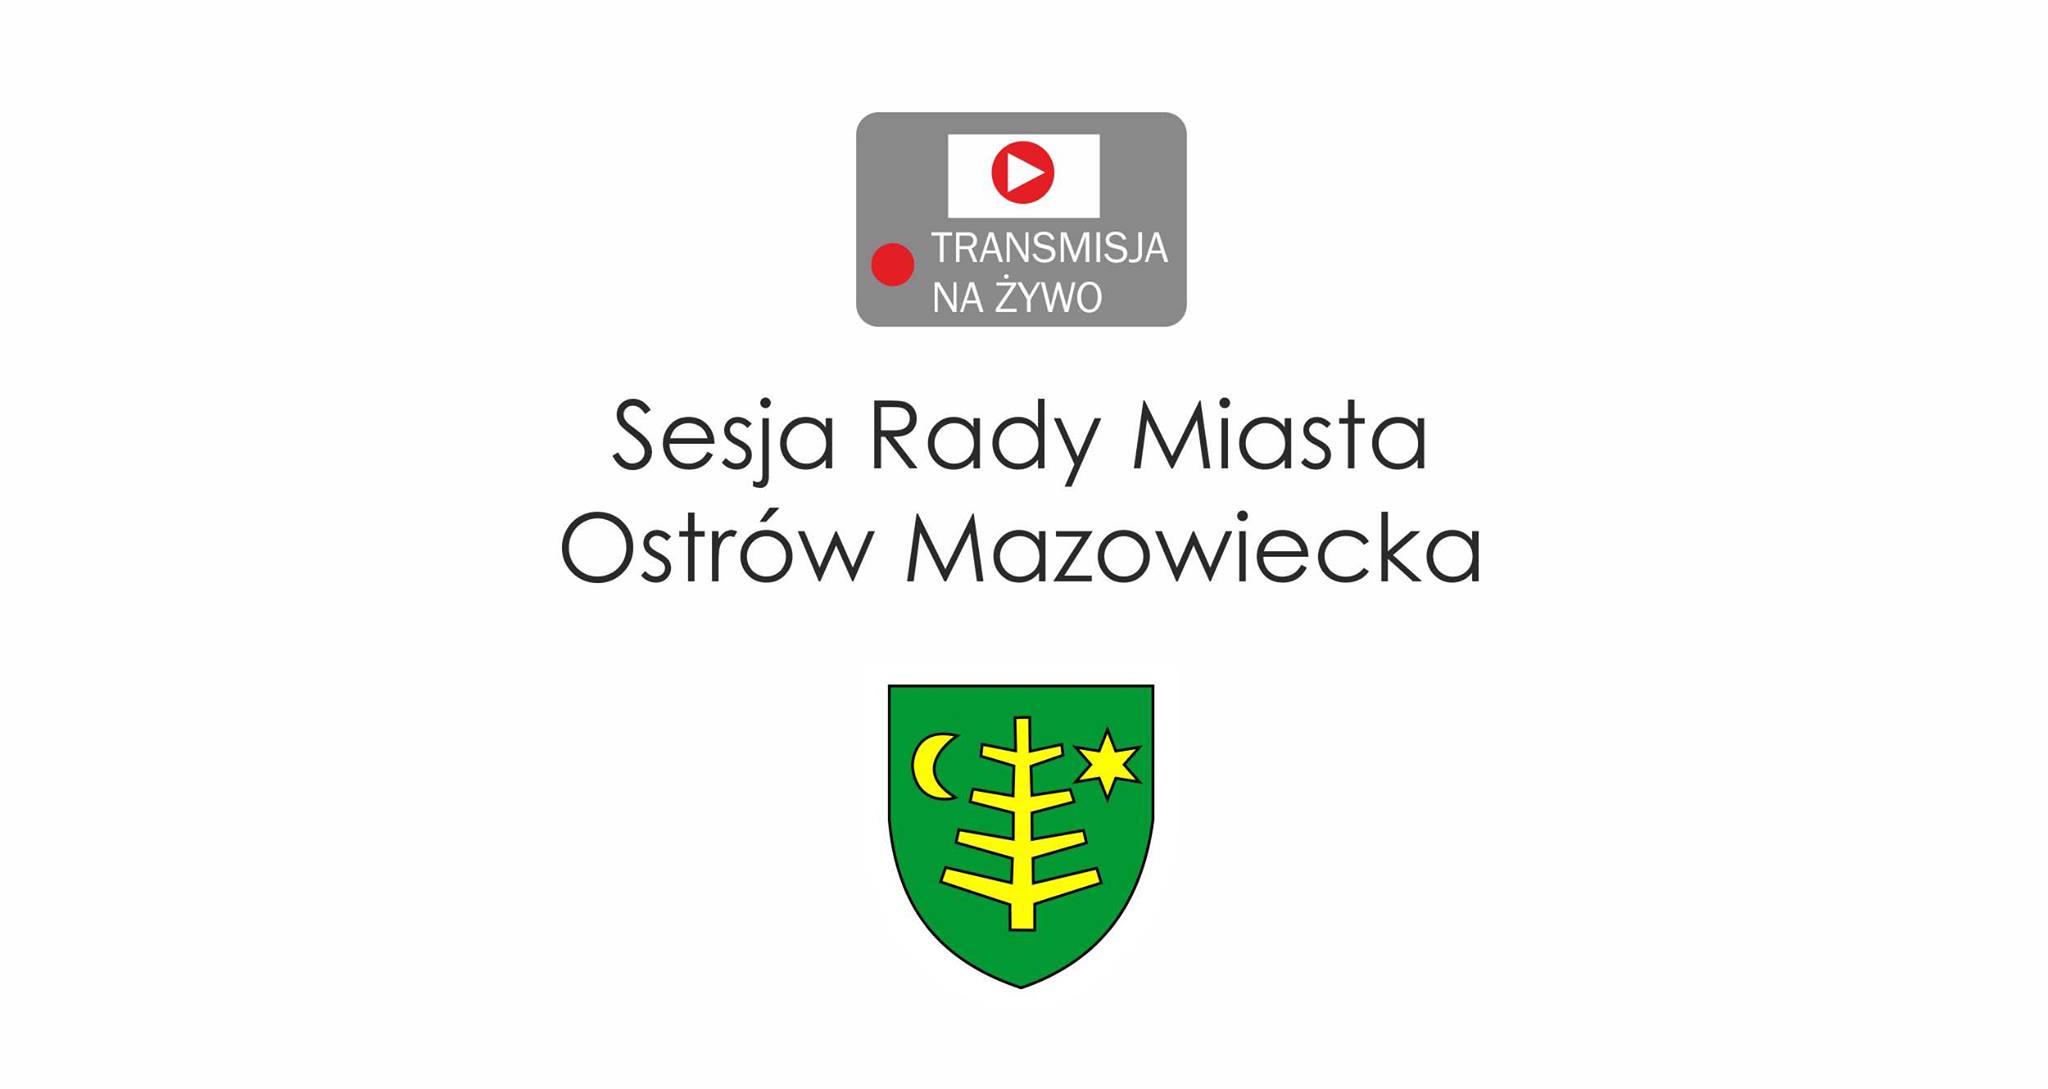 Sesja Rady Miasta Ostrów Mazowiecka